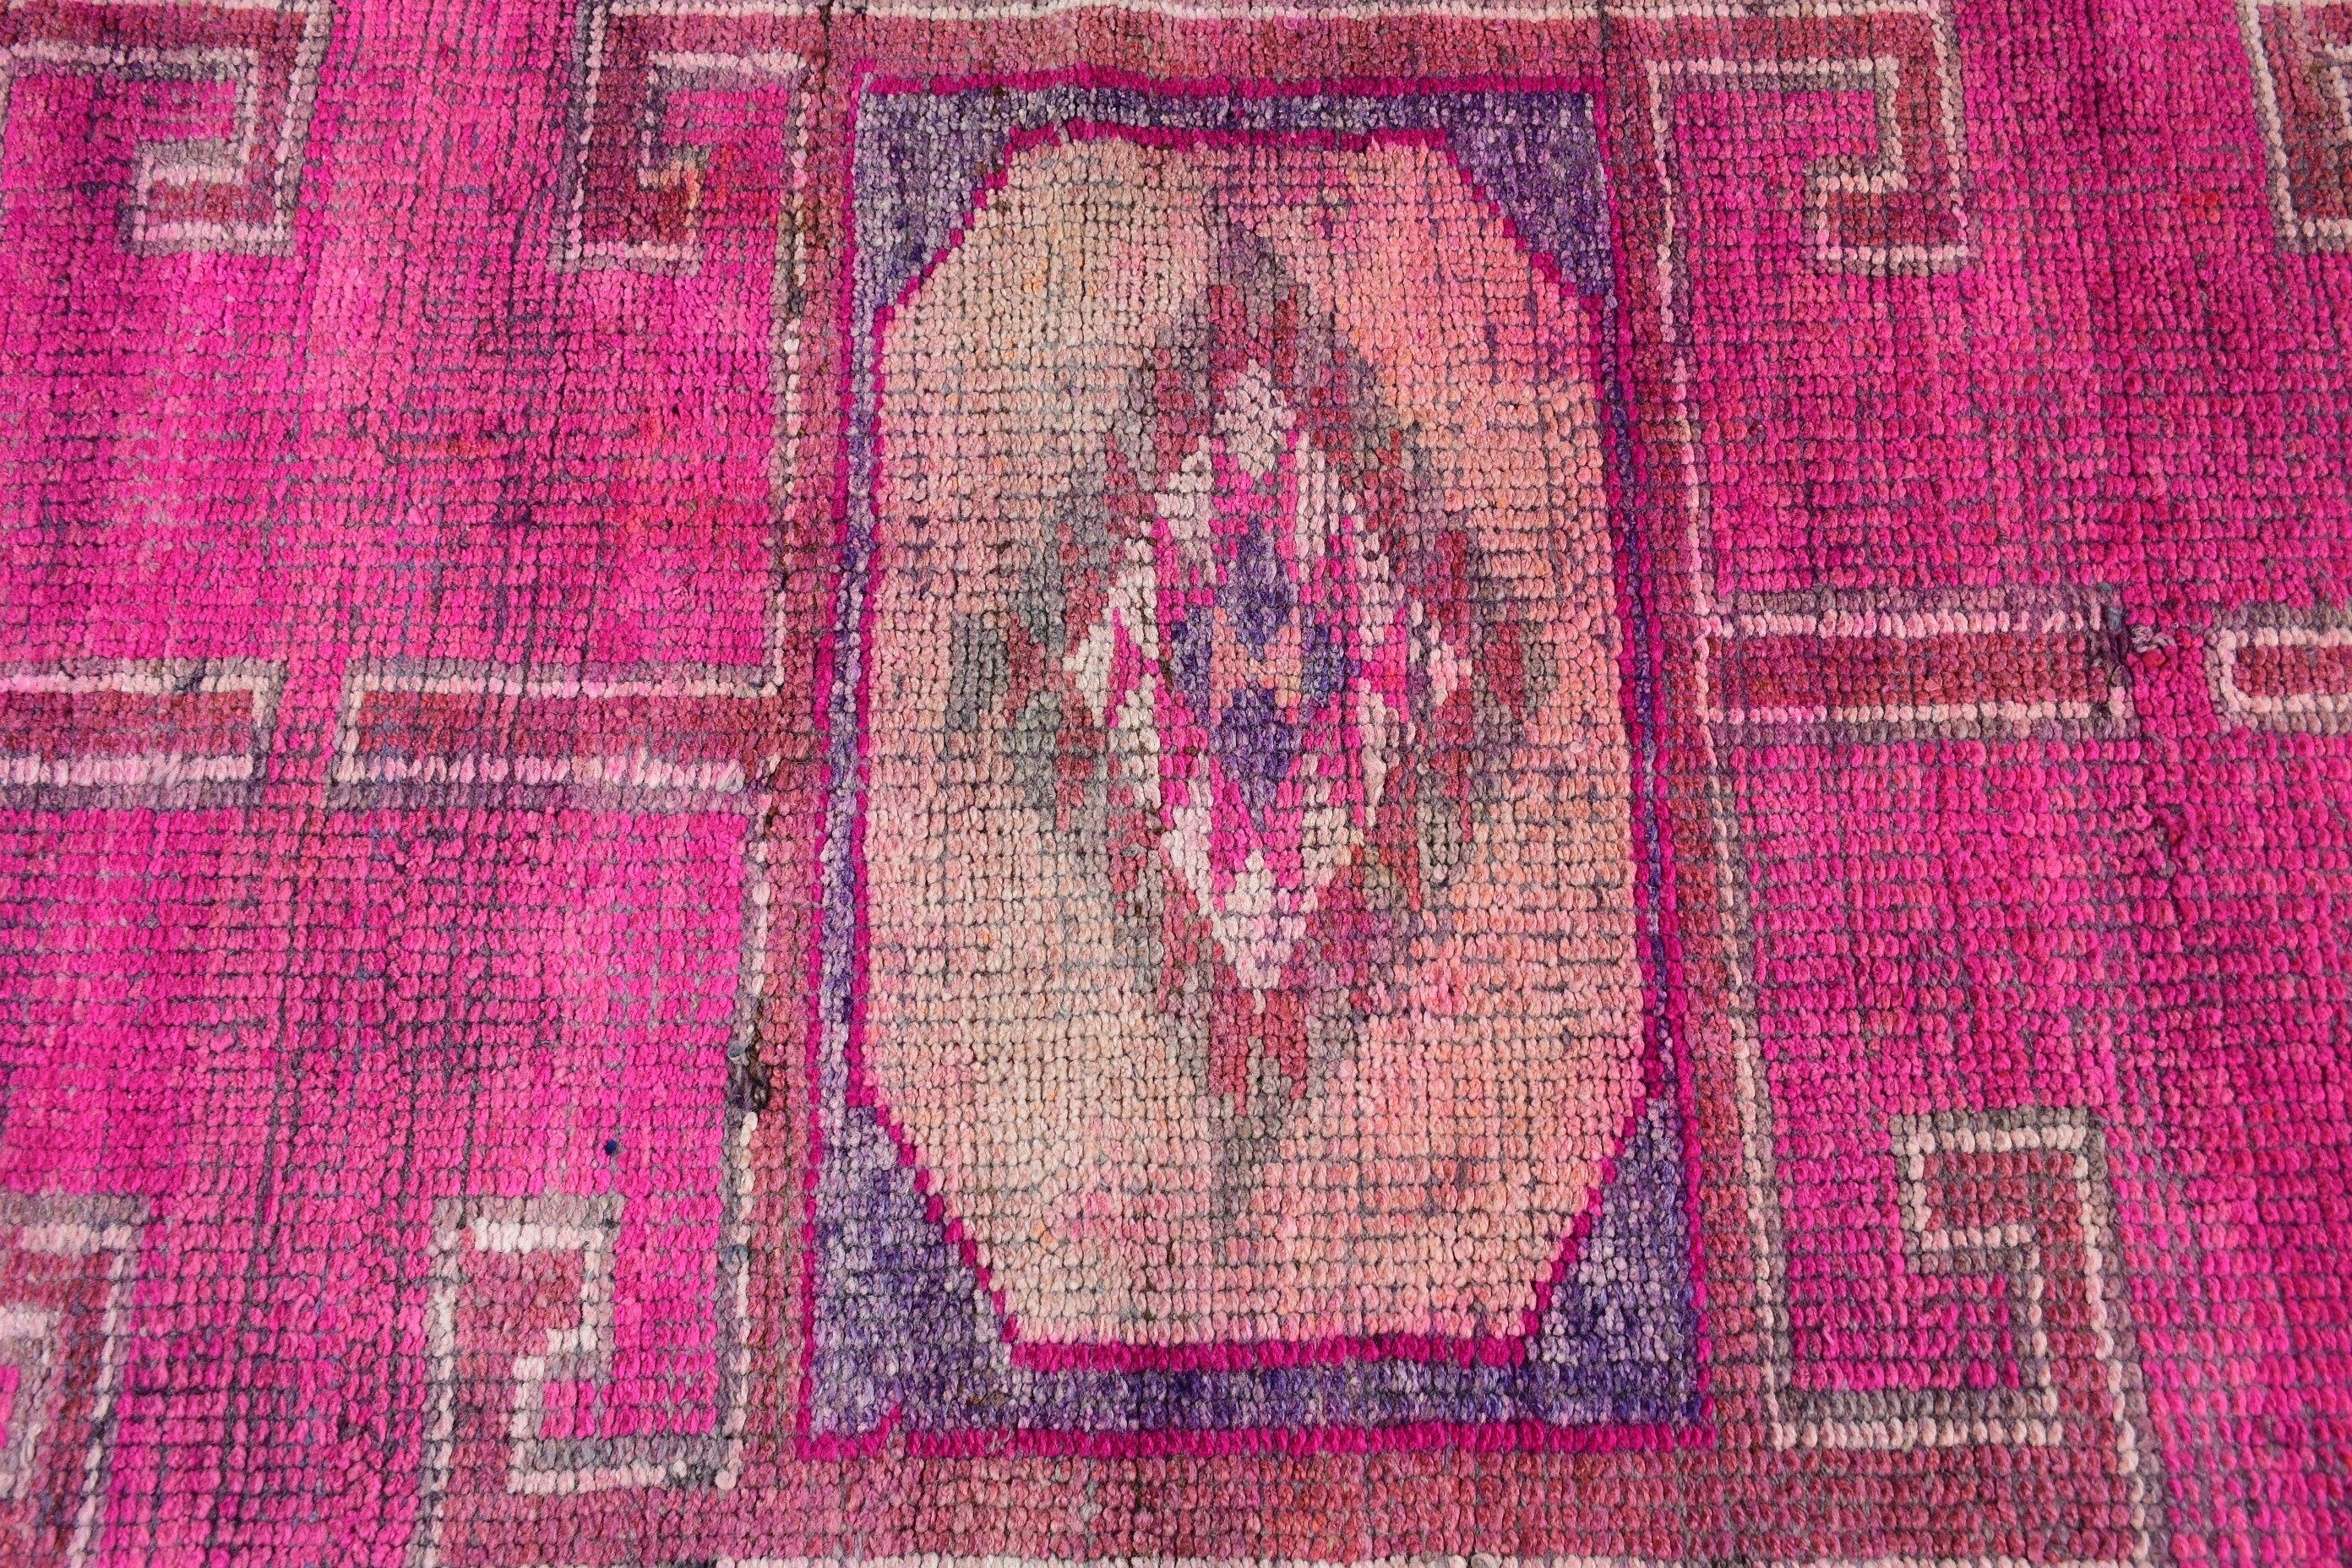 Vintage Rug, Pink Bedroom Rug, Corridor Rug, 3.3x10.6 ft Runner Rug, Hallway Rugs, Turkish Rugs, Oushak Rug, Rugs for Corridor, Floor Rug